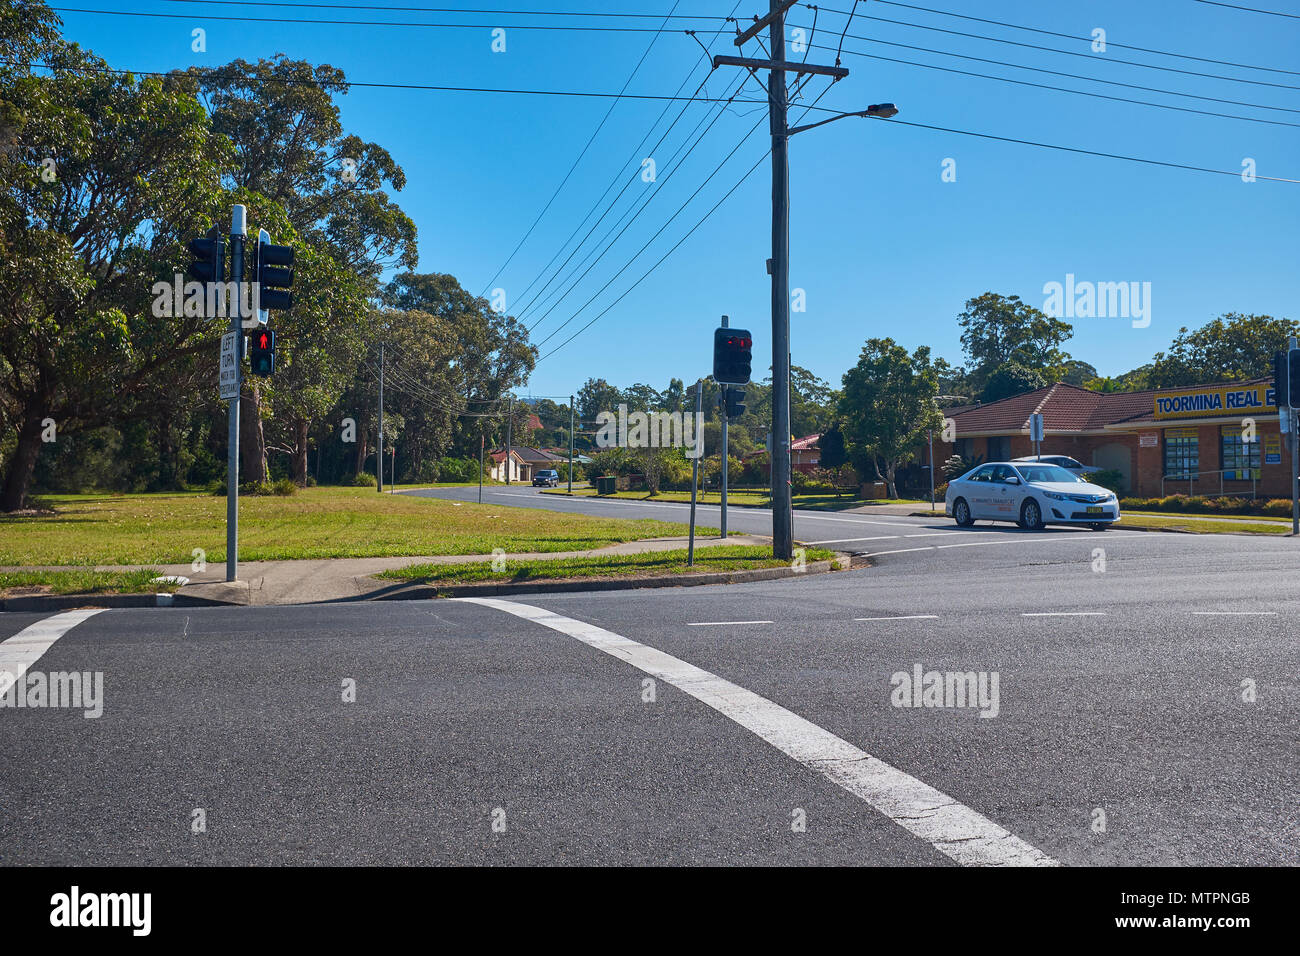 Un franchissement routier au Toormina avec feux de circulation rouge et montrant un taxi à la jonction, New South Wales, Australie Banque D'Images